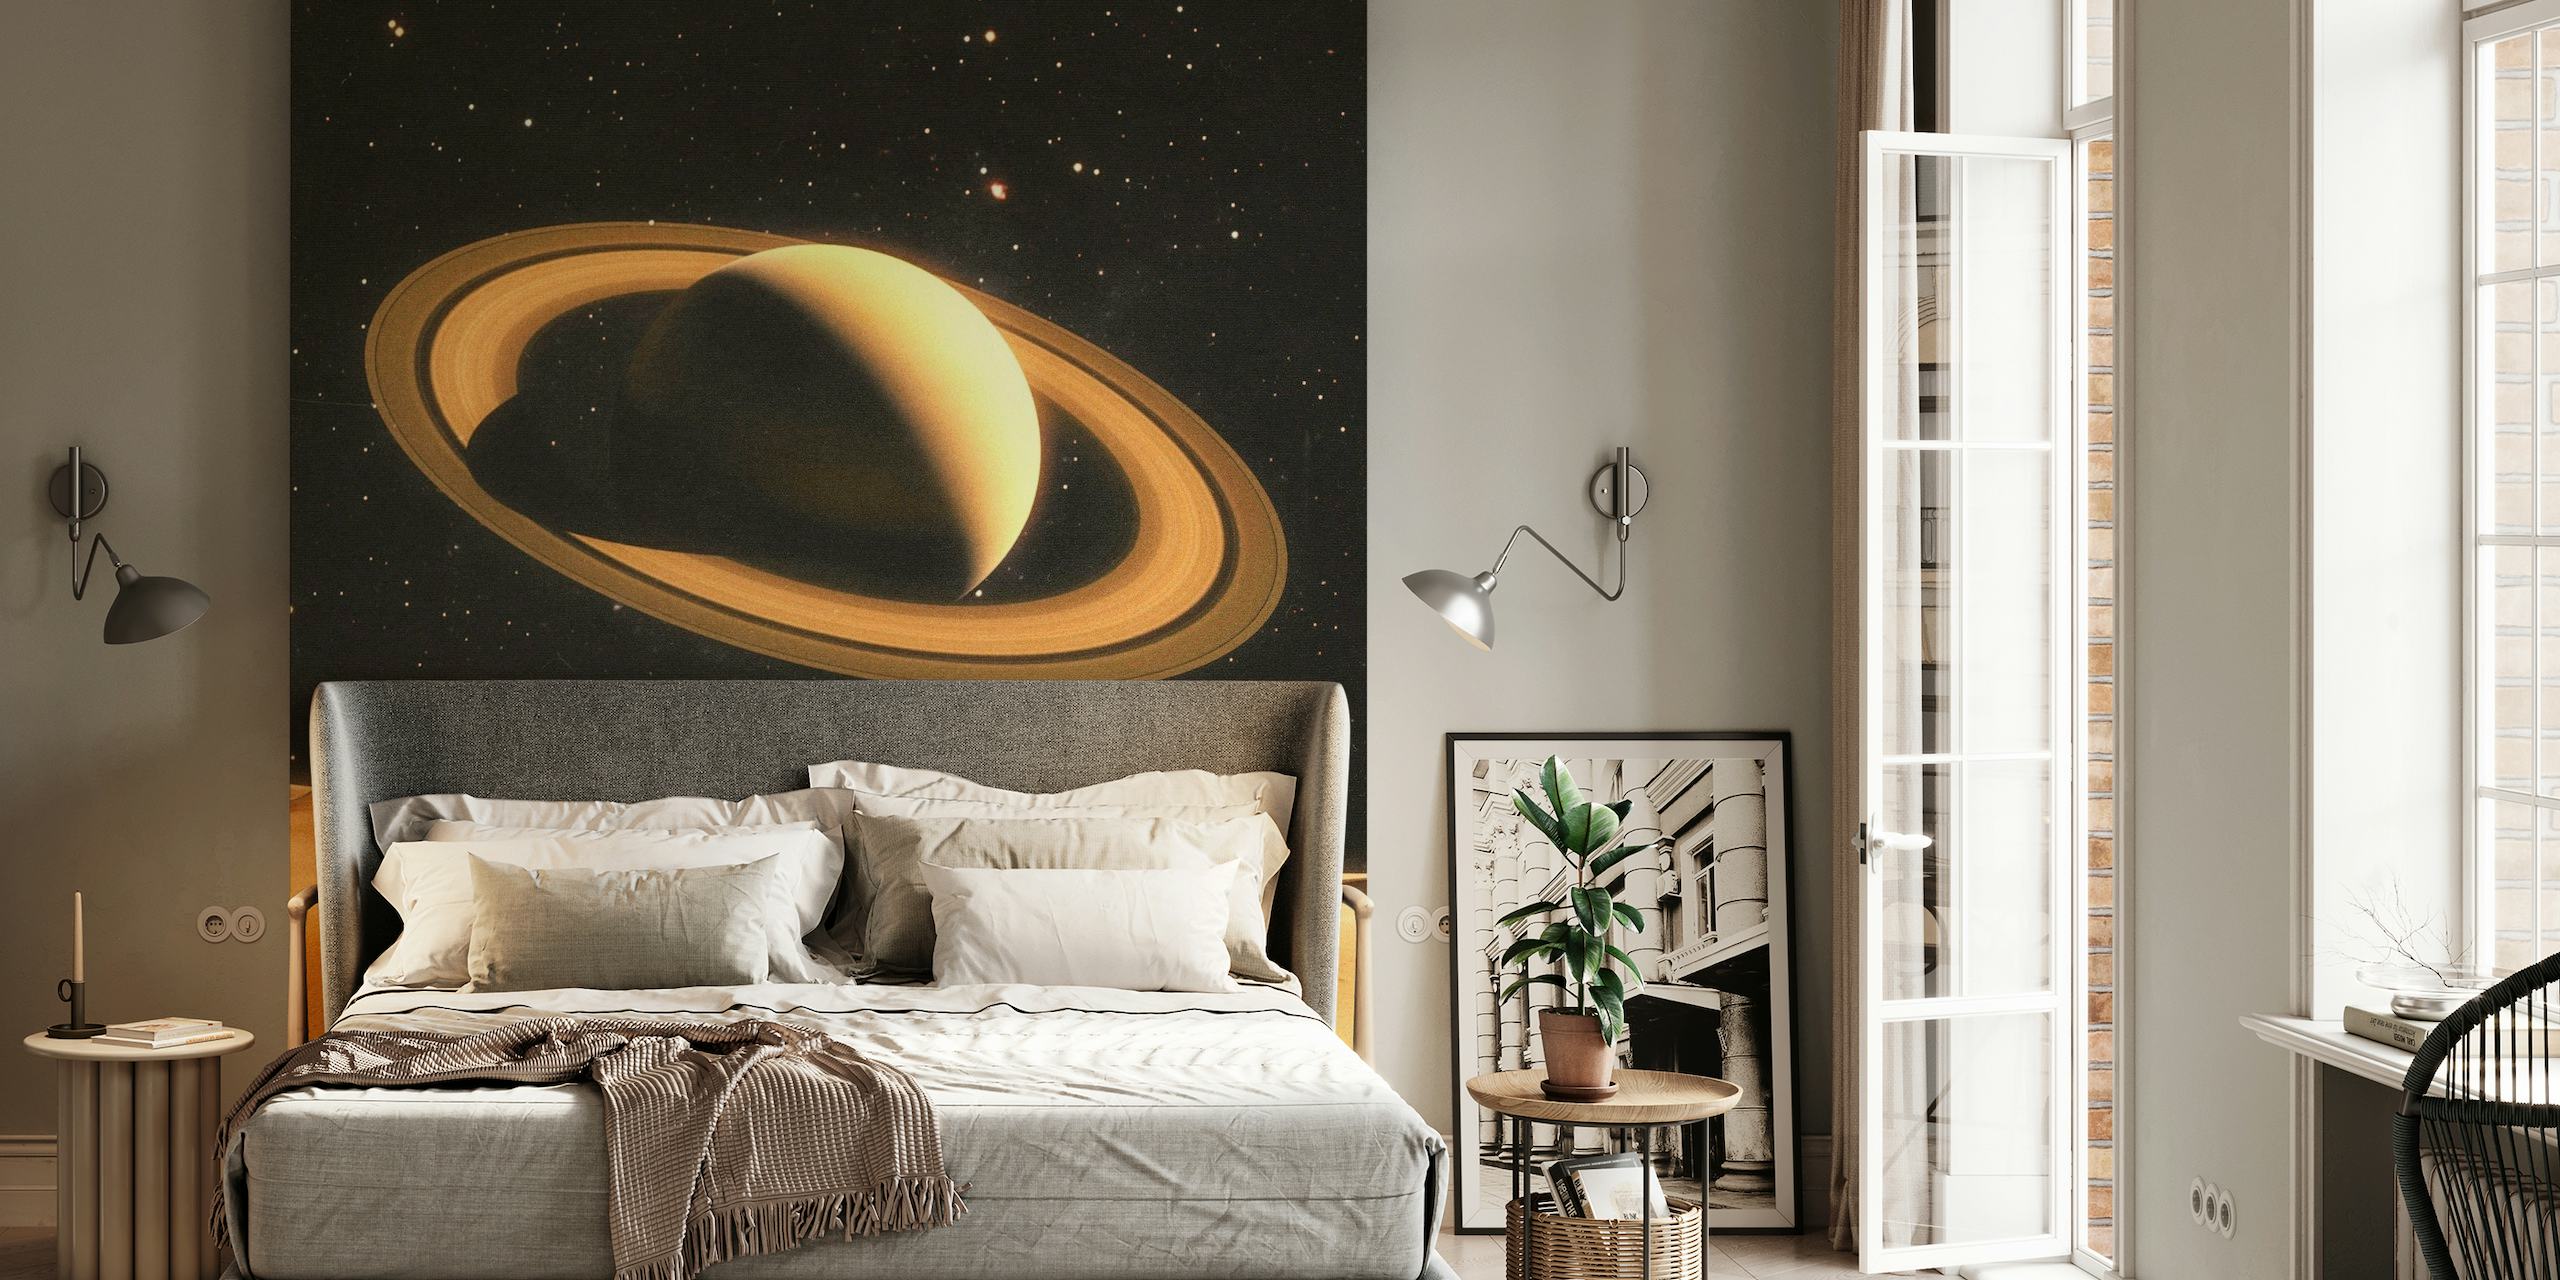 Photo murale représentant deux personnes sur une planète désertique avec Saturne en arrière-plan